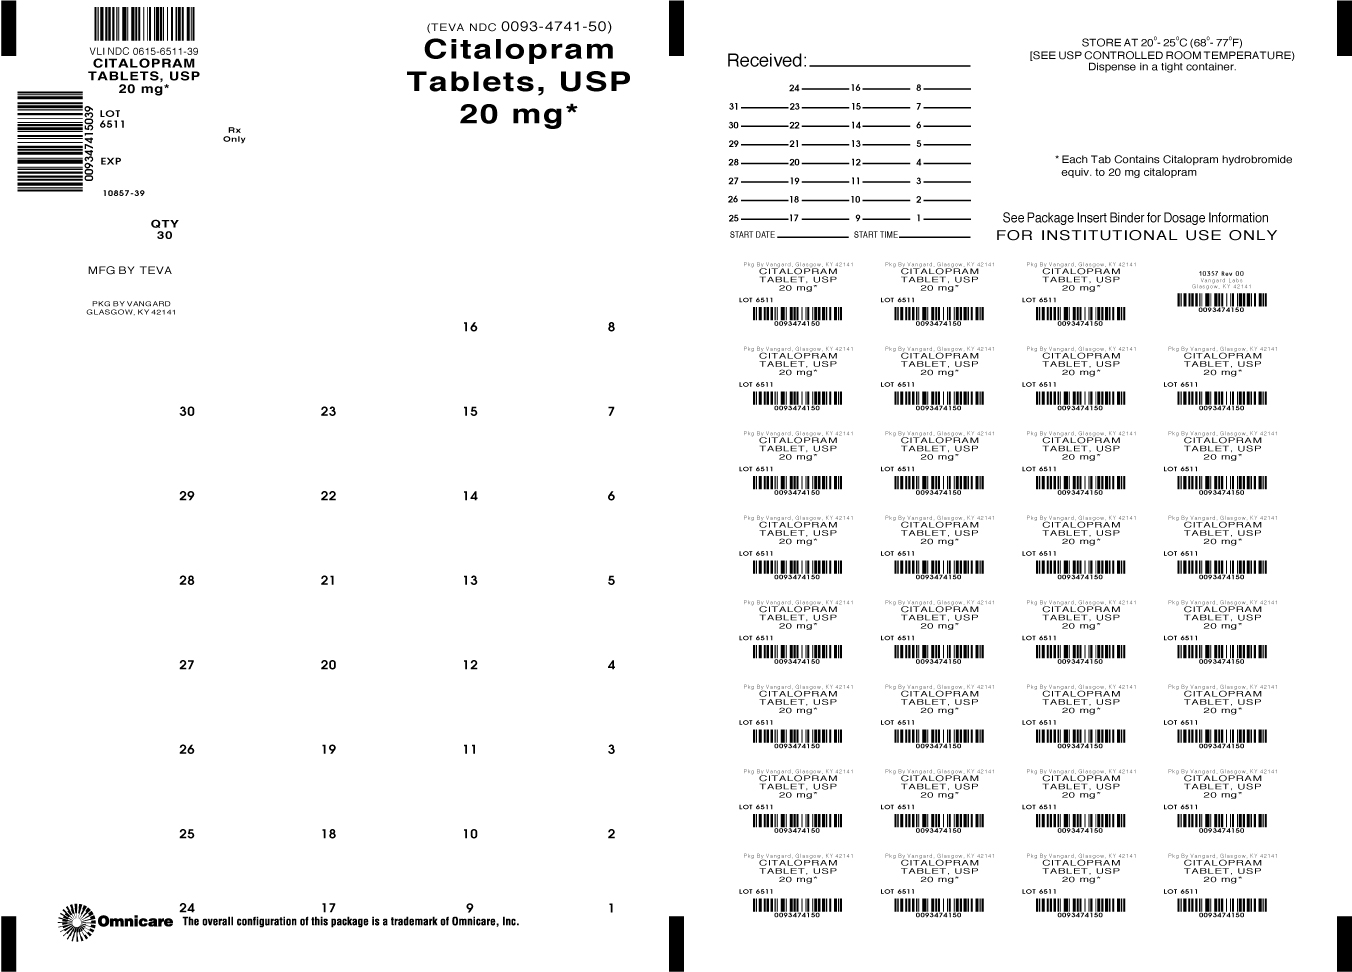 Citalopram Tablets, USP 20mg